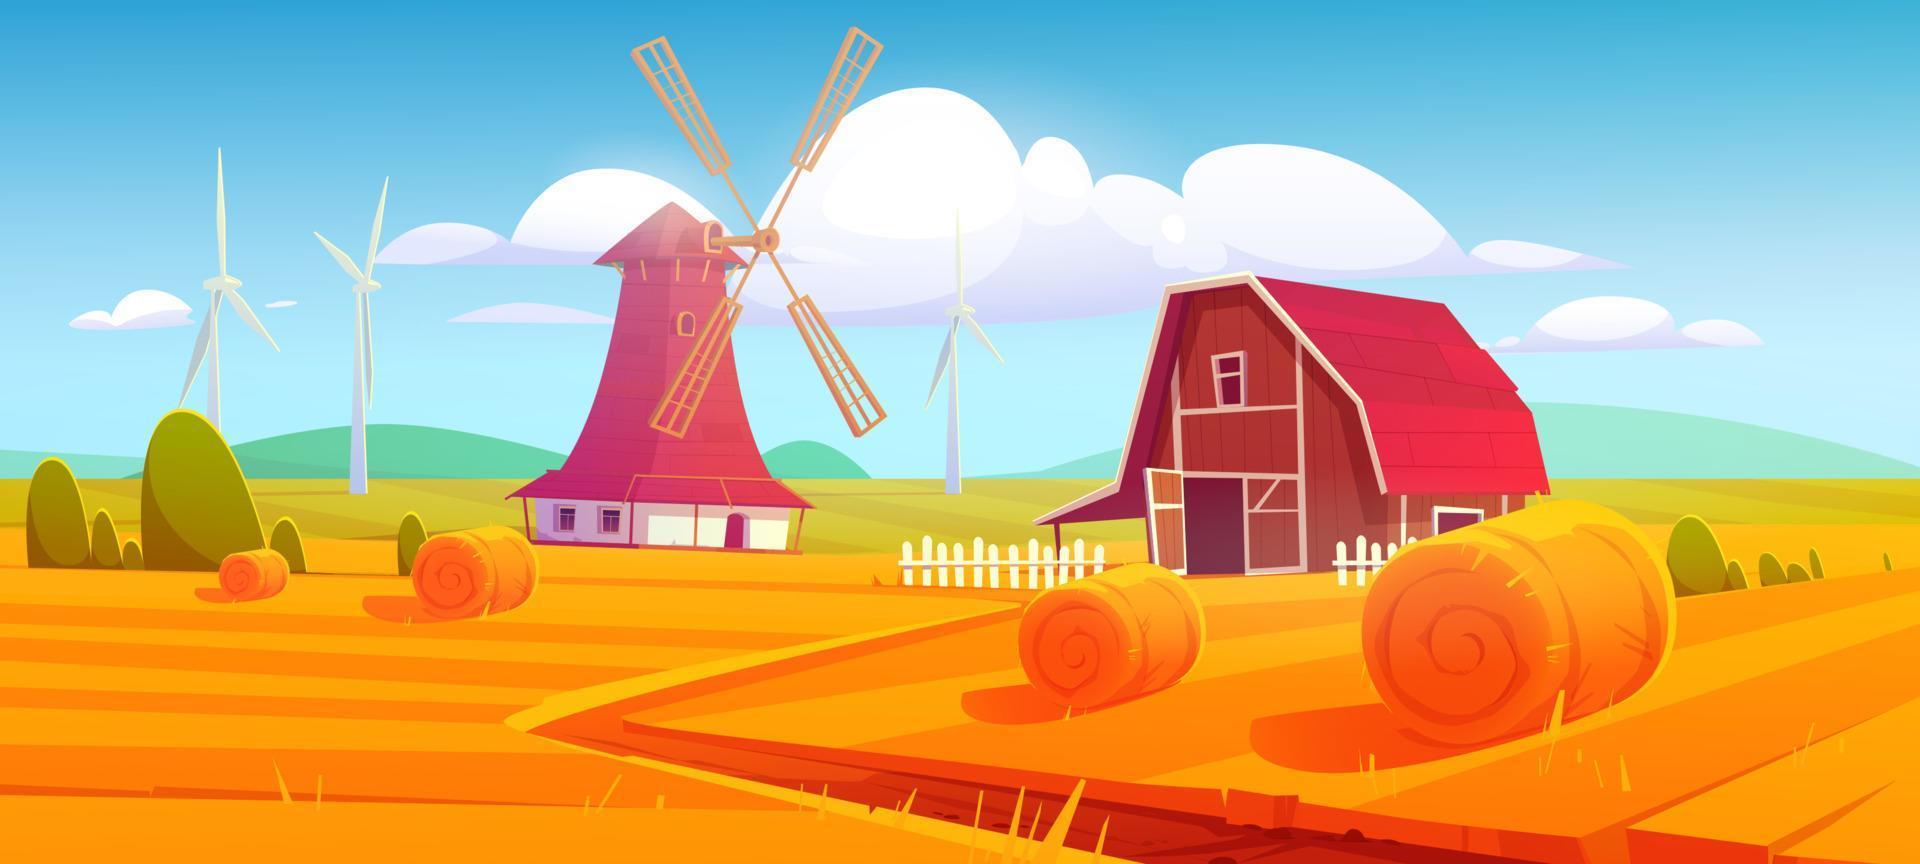 Windmühle und Scheune auf ländlichem Hintergrund der Bauernhofnatur vektor